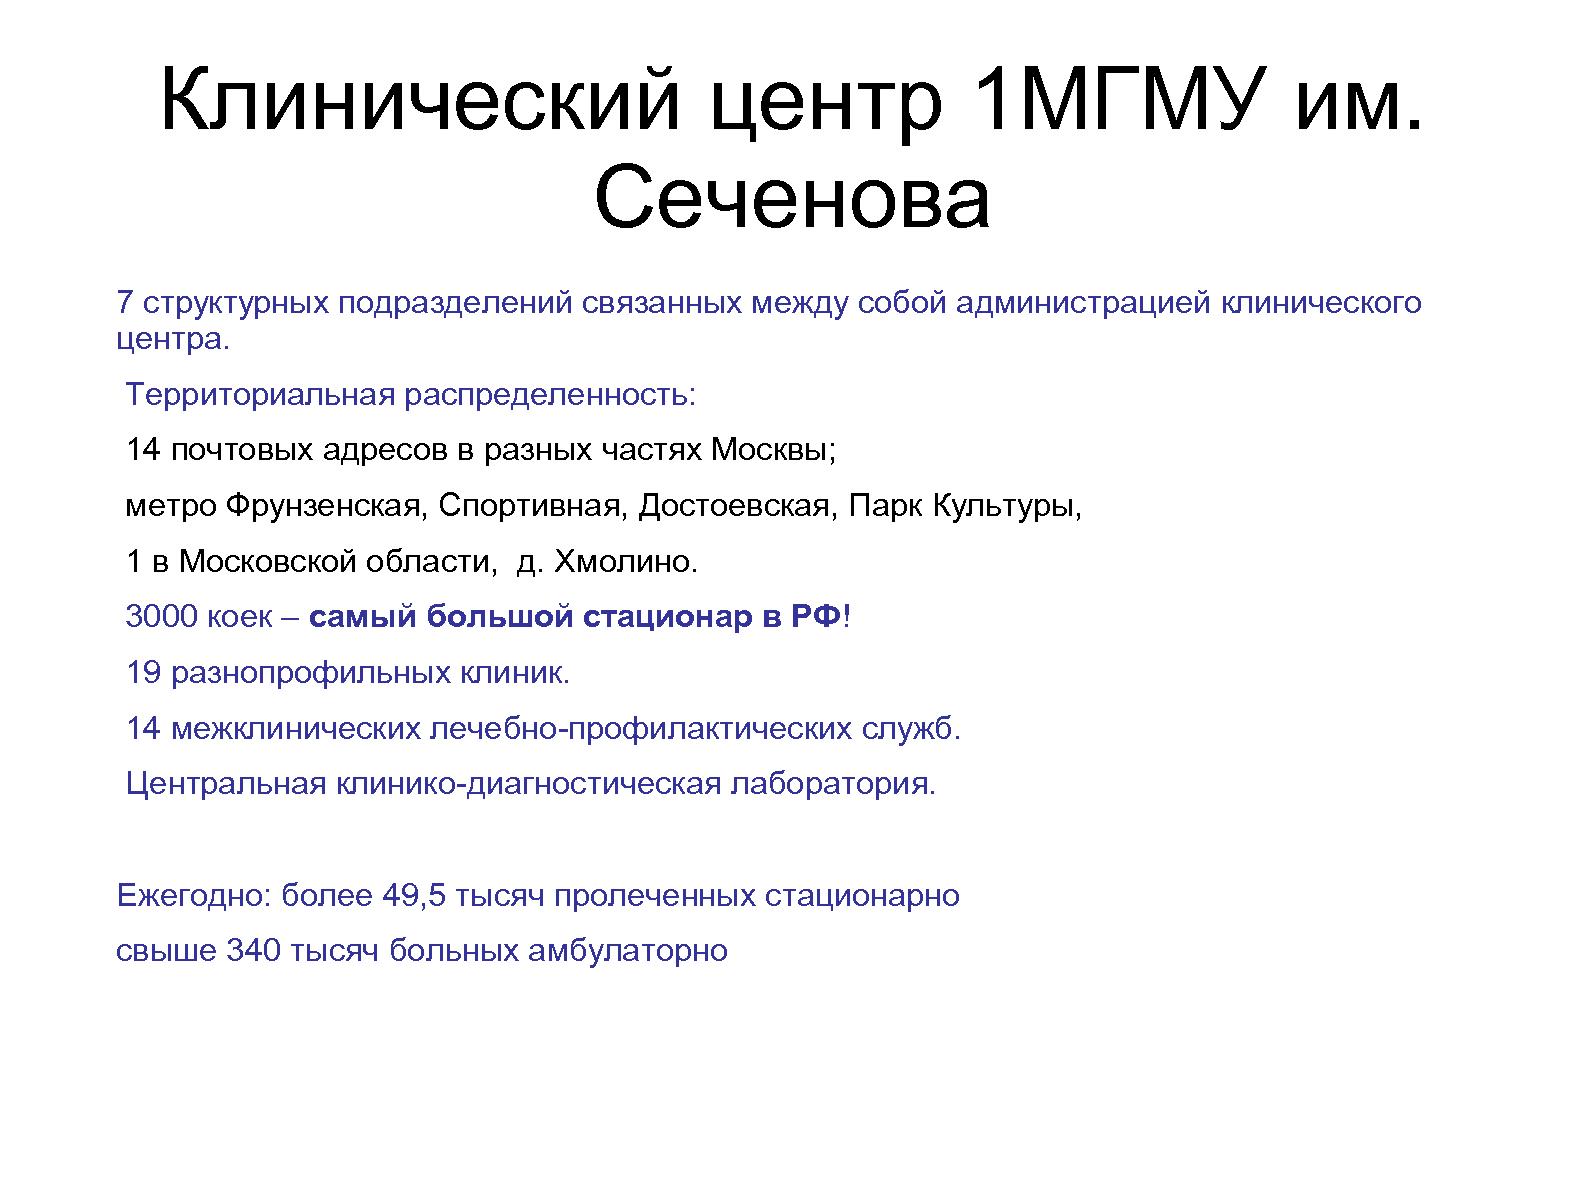 Файл:Шестая платформа ALT Linux в медицинских учреждениях России 2012-2013 (Алексей Новодворский, OSDN-UA-2013).pdf